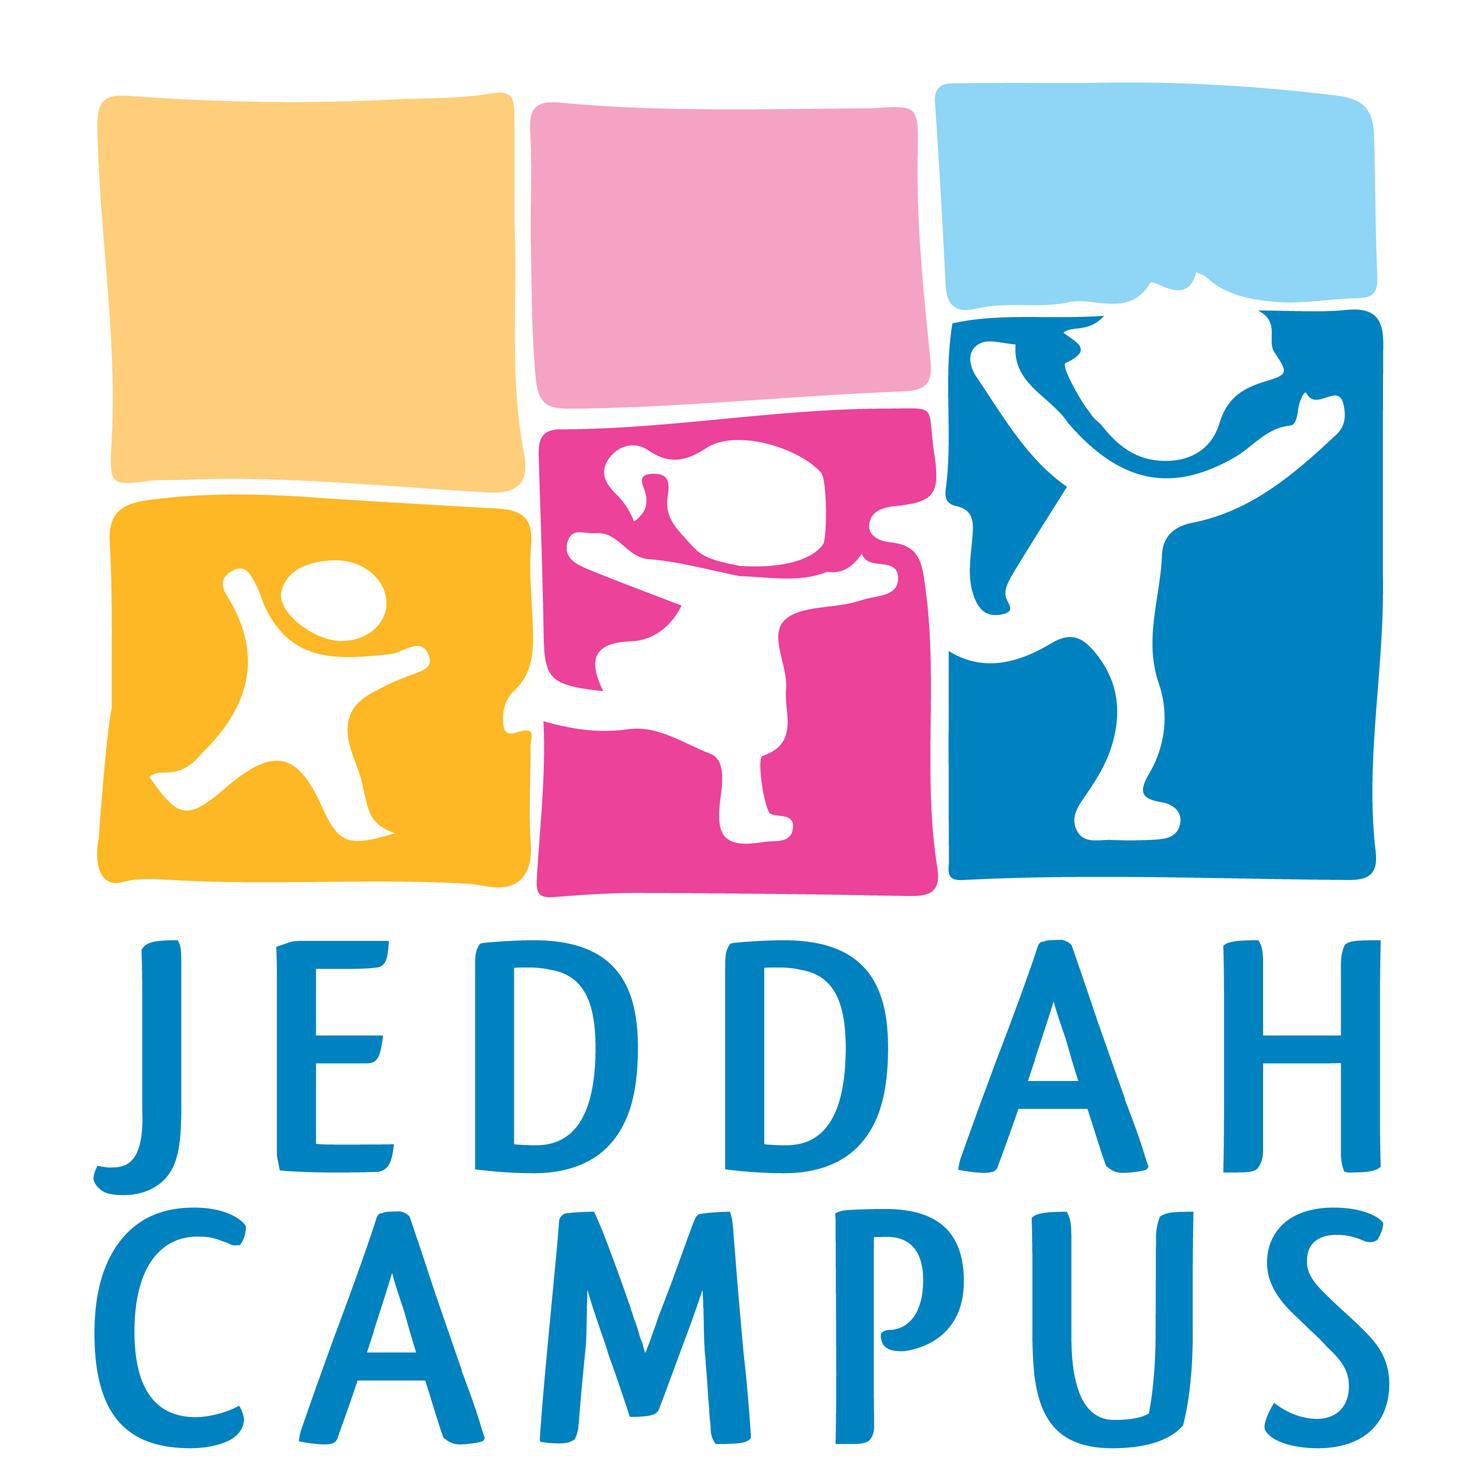 Nursery logo Jeddah Campus International School